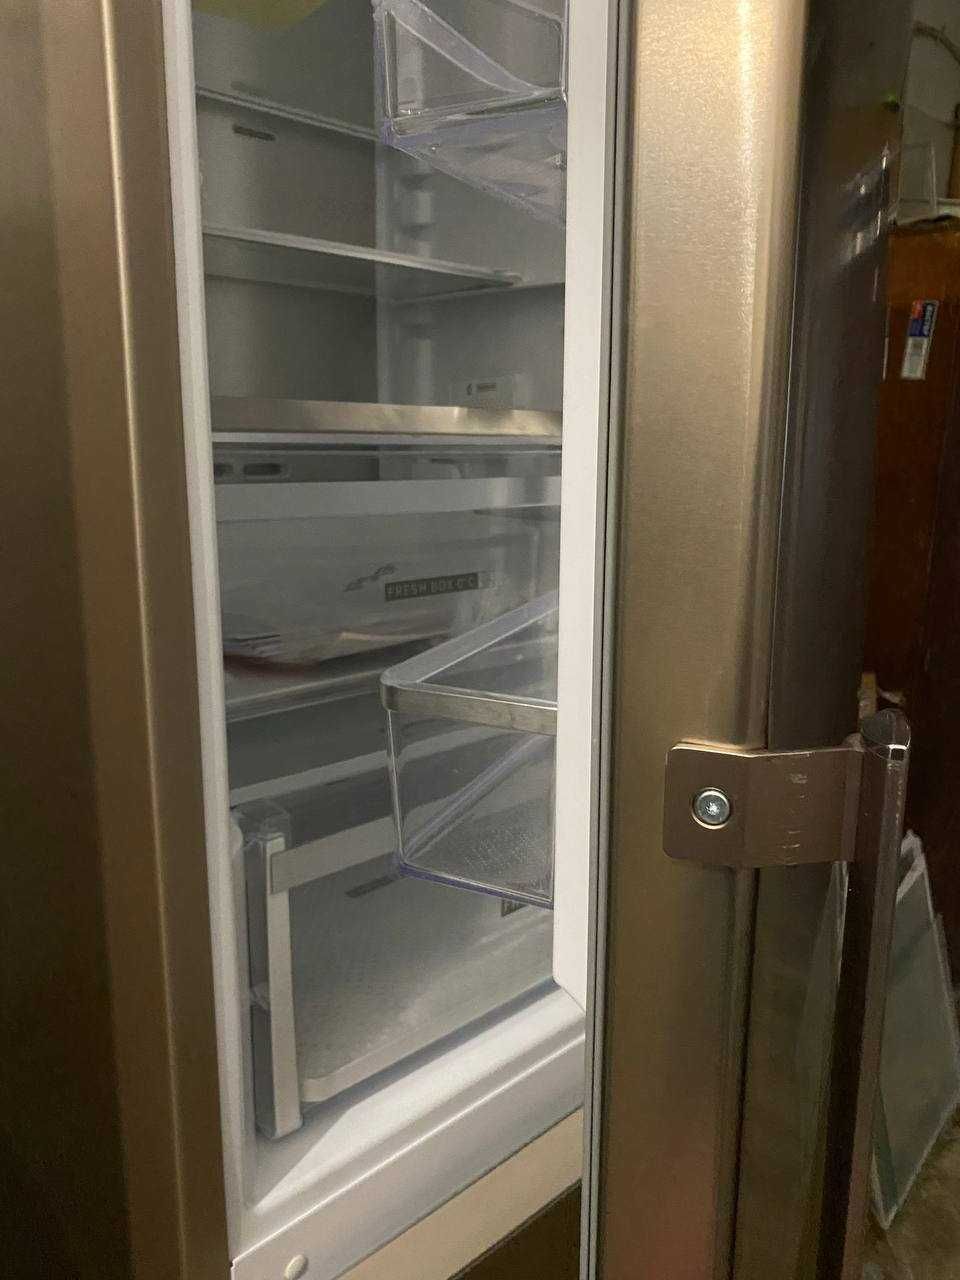 Холодильник Whirlpool W9 931D B H 3 (201 см) з Європи